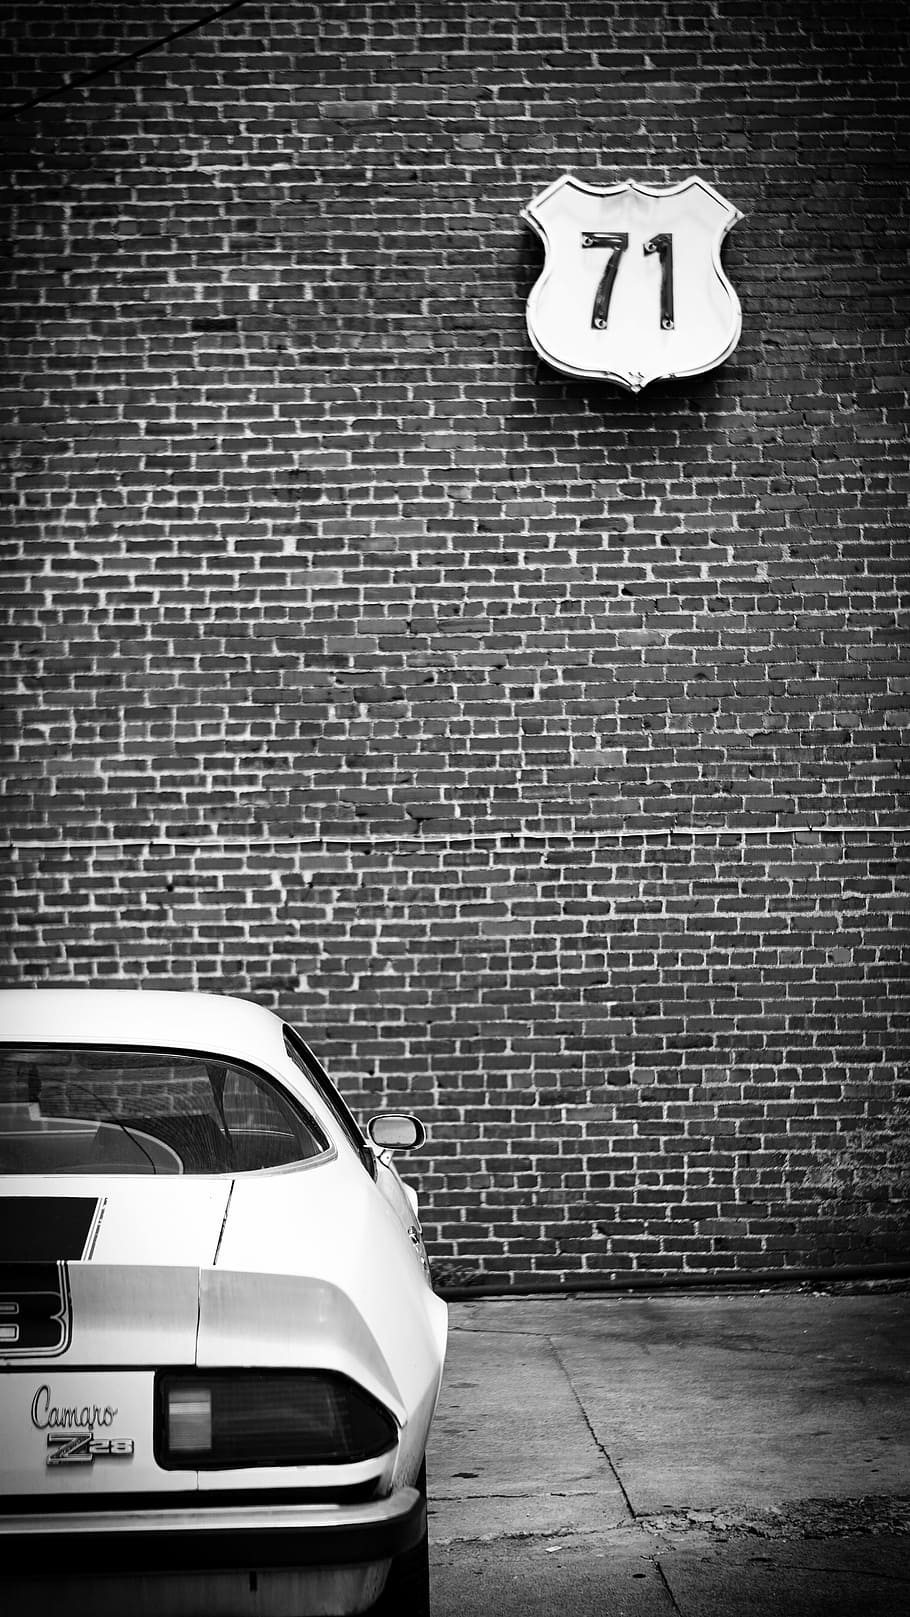 Camaro, coche, blanco y negro, transporte, vintage, retro, ladrillo, pared, ciudad, calle